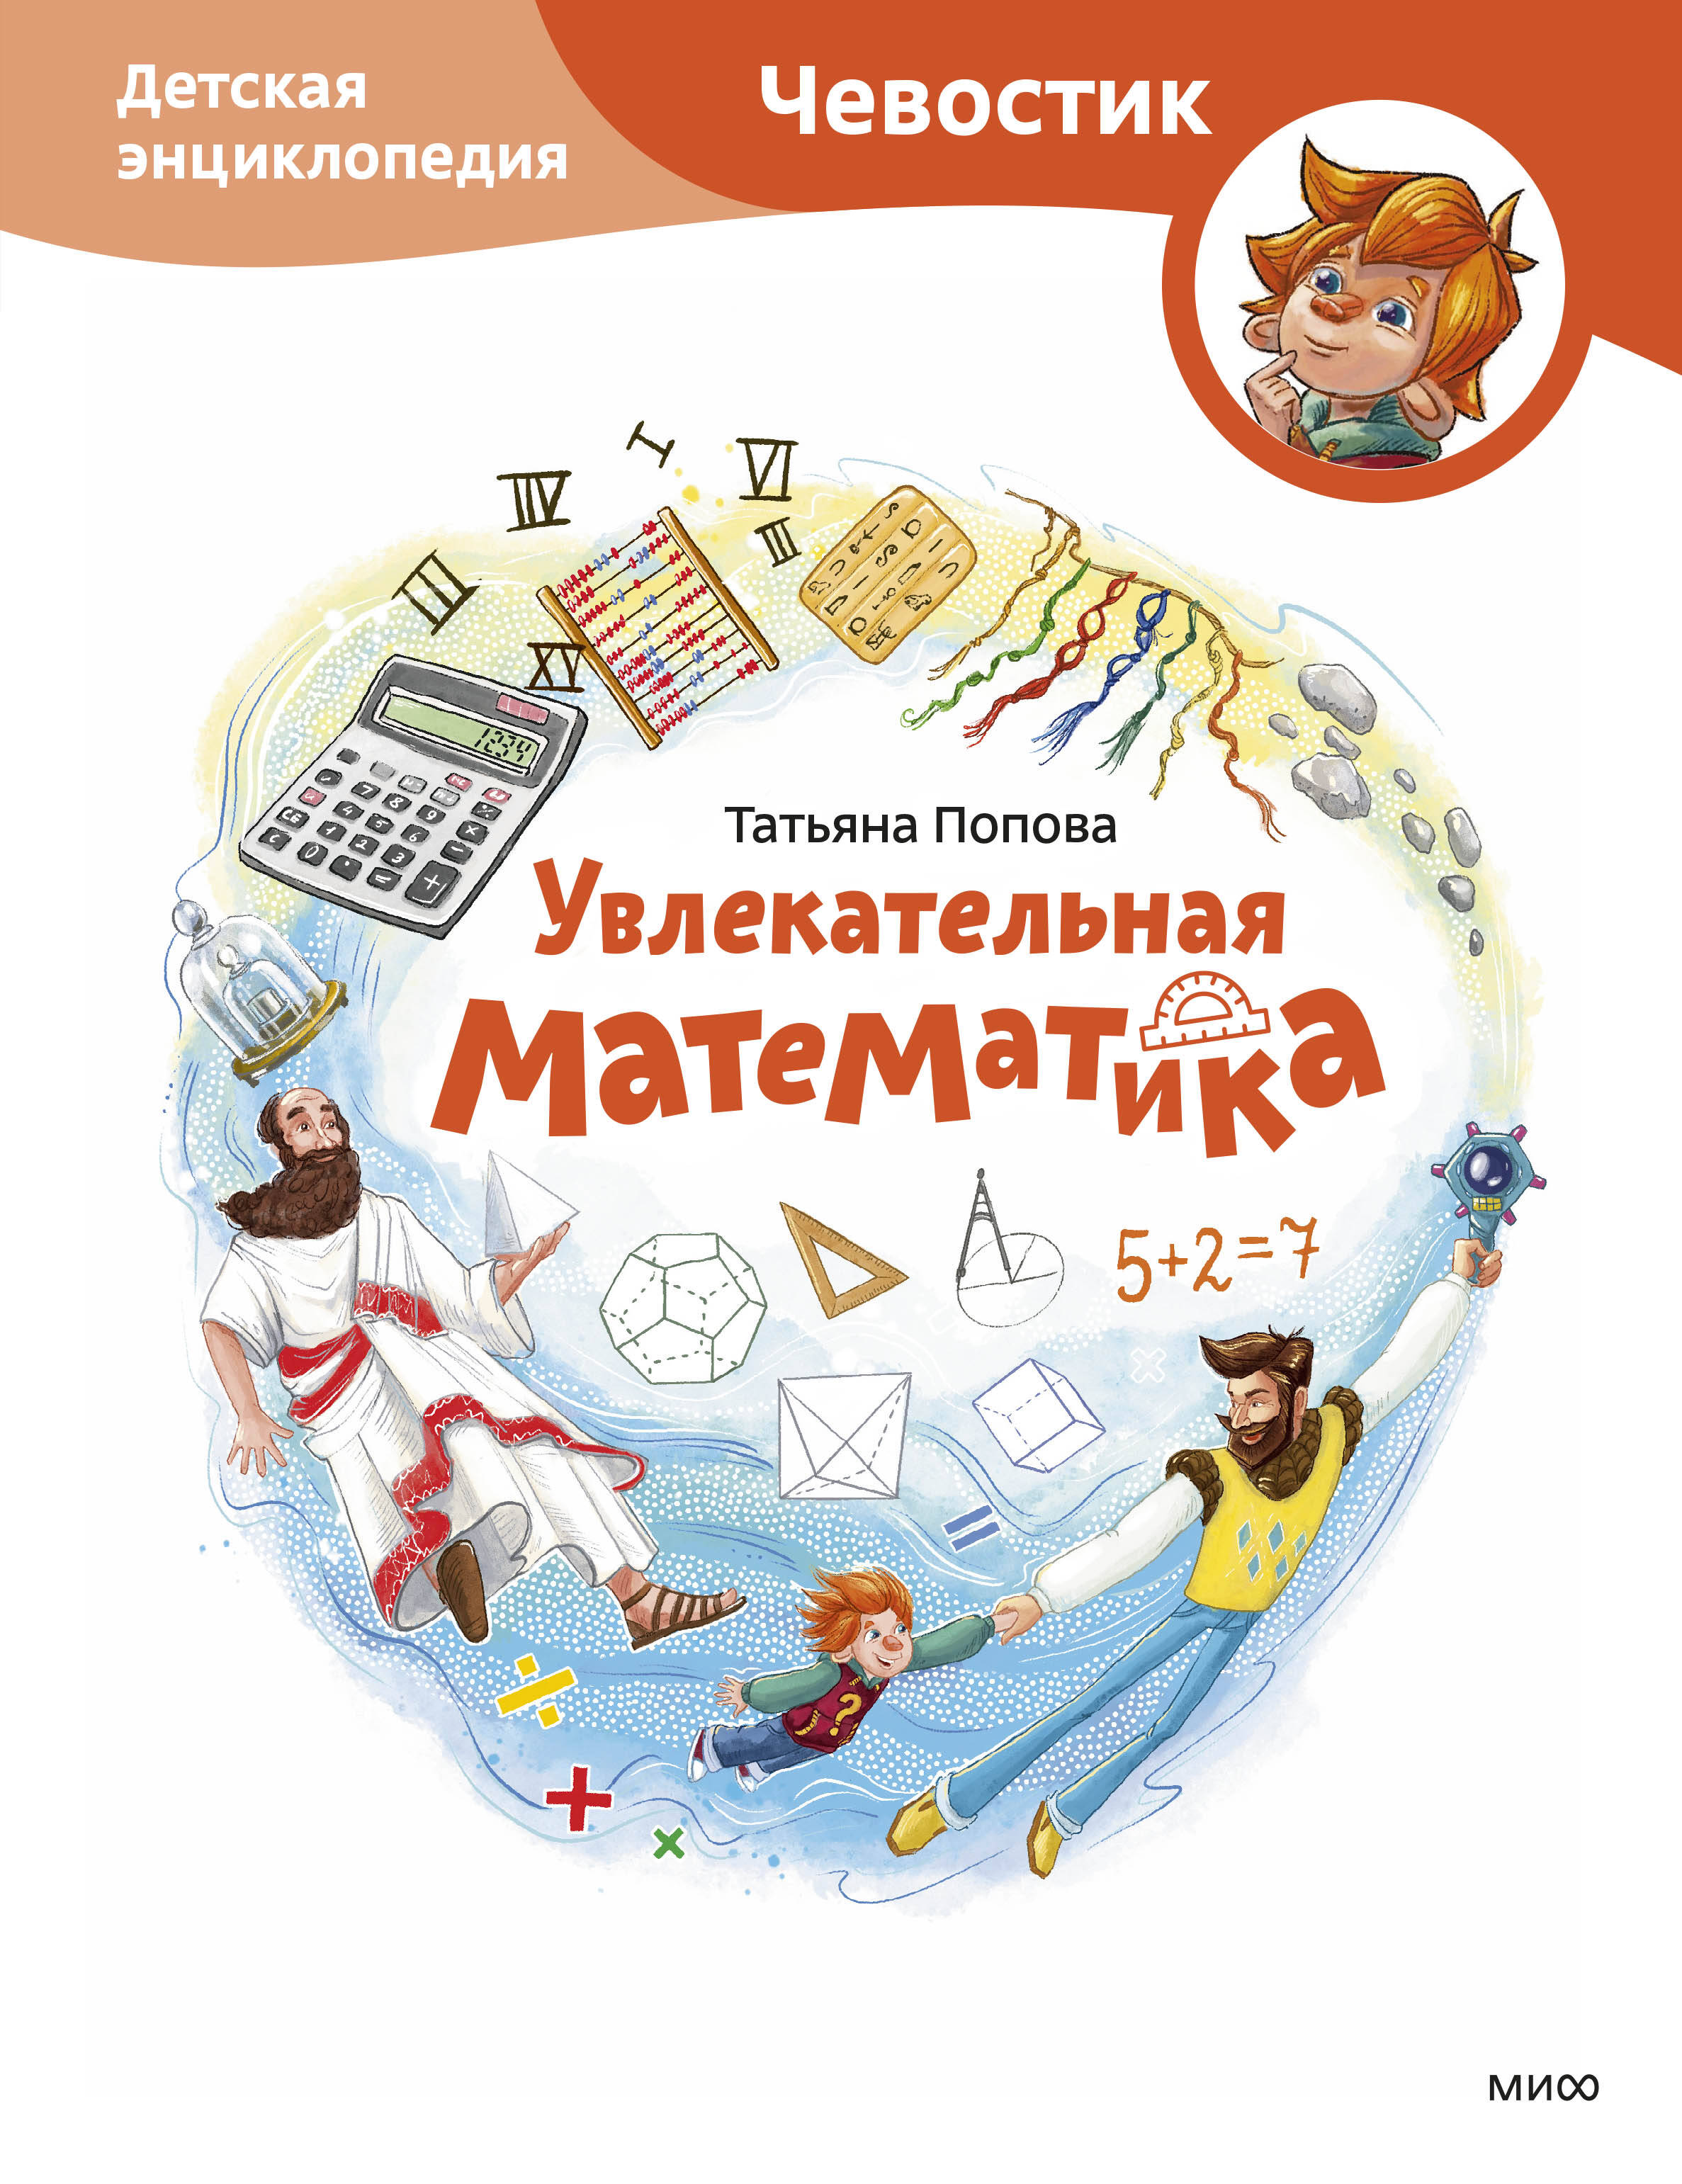 Увлекательная математика. Детская энциклопедия (Чевостик) увлекательная астрономия детская энциклопедия